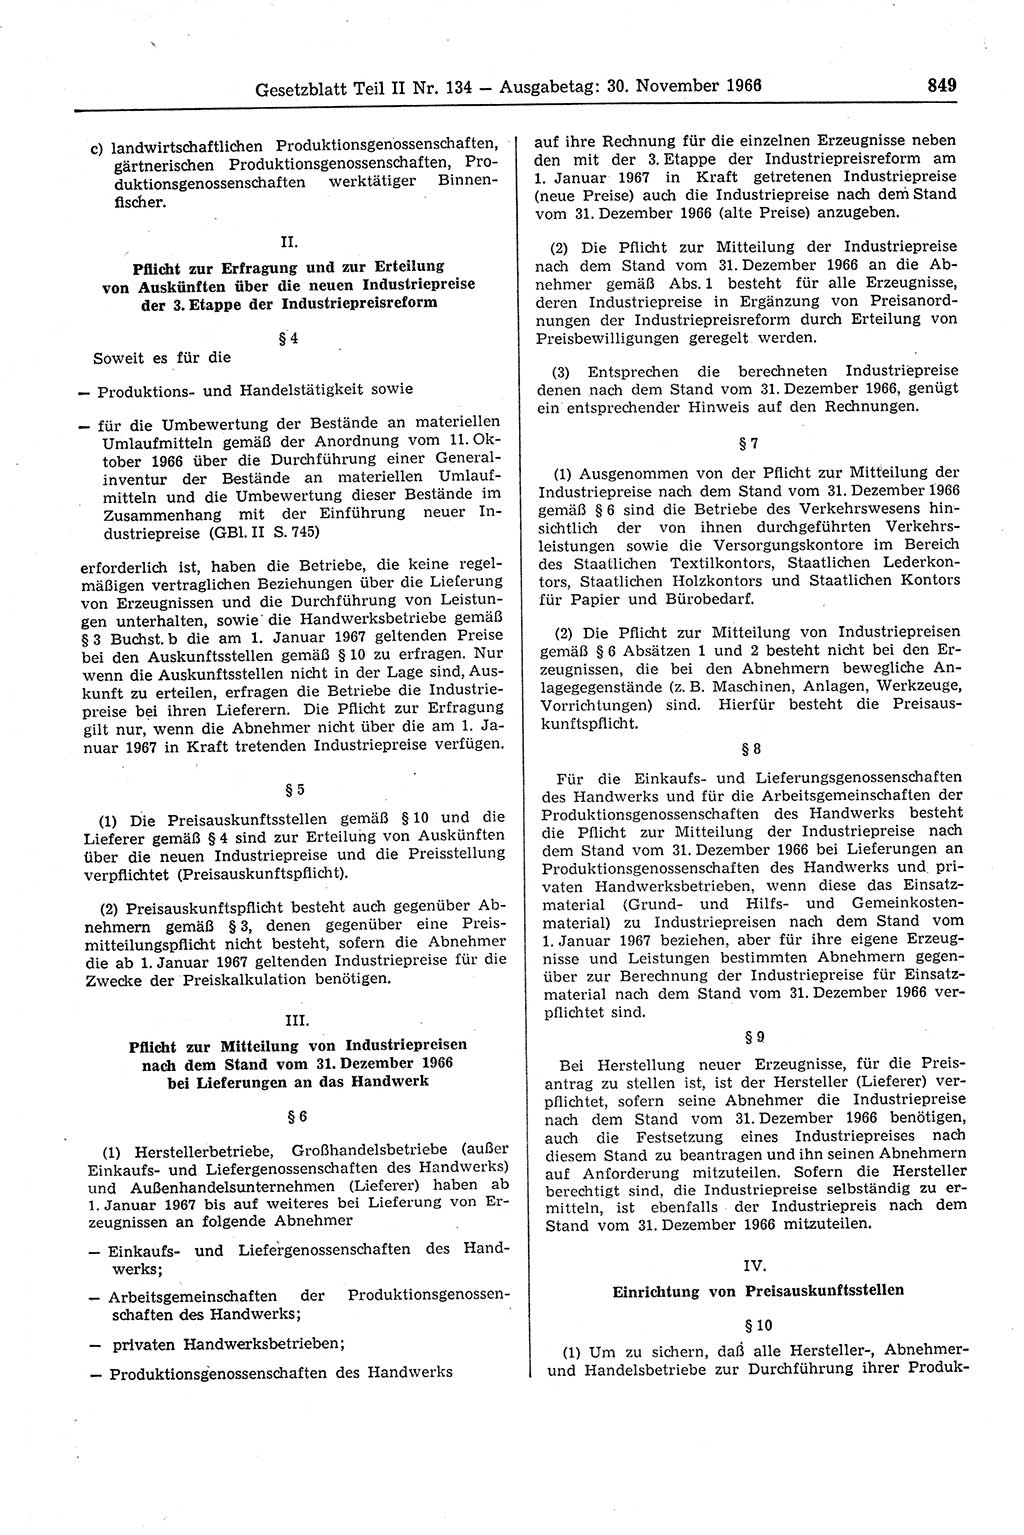 Gesetzblatt (GBl.) der Deutschen Demokratischen Republik (DDR) Teil ⅠⅠ 1966, Seite 849 (GBl. DDR ⅠⅠ 1966, S. 849)